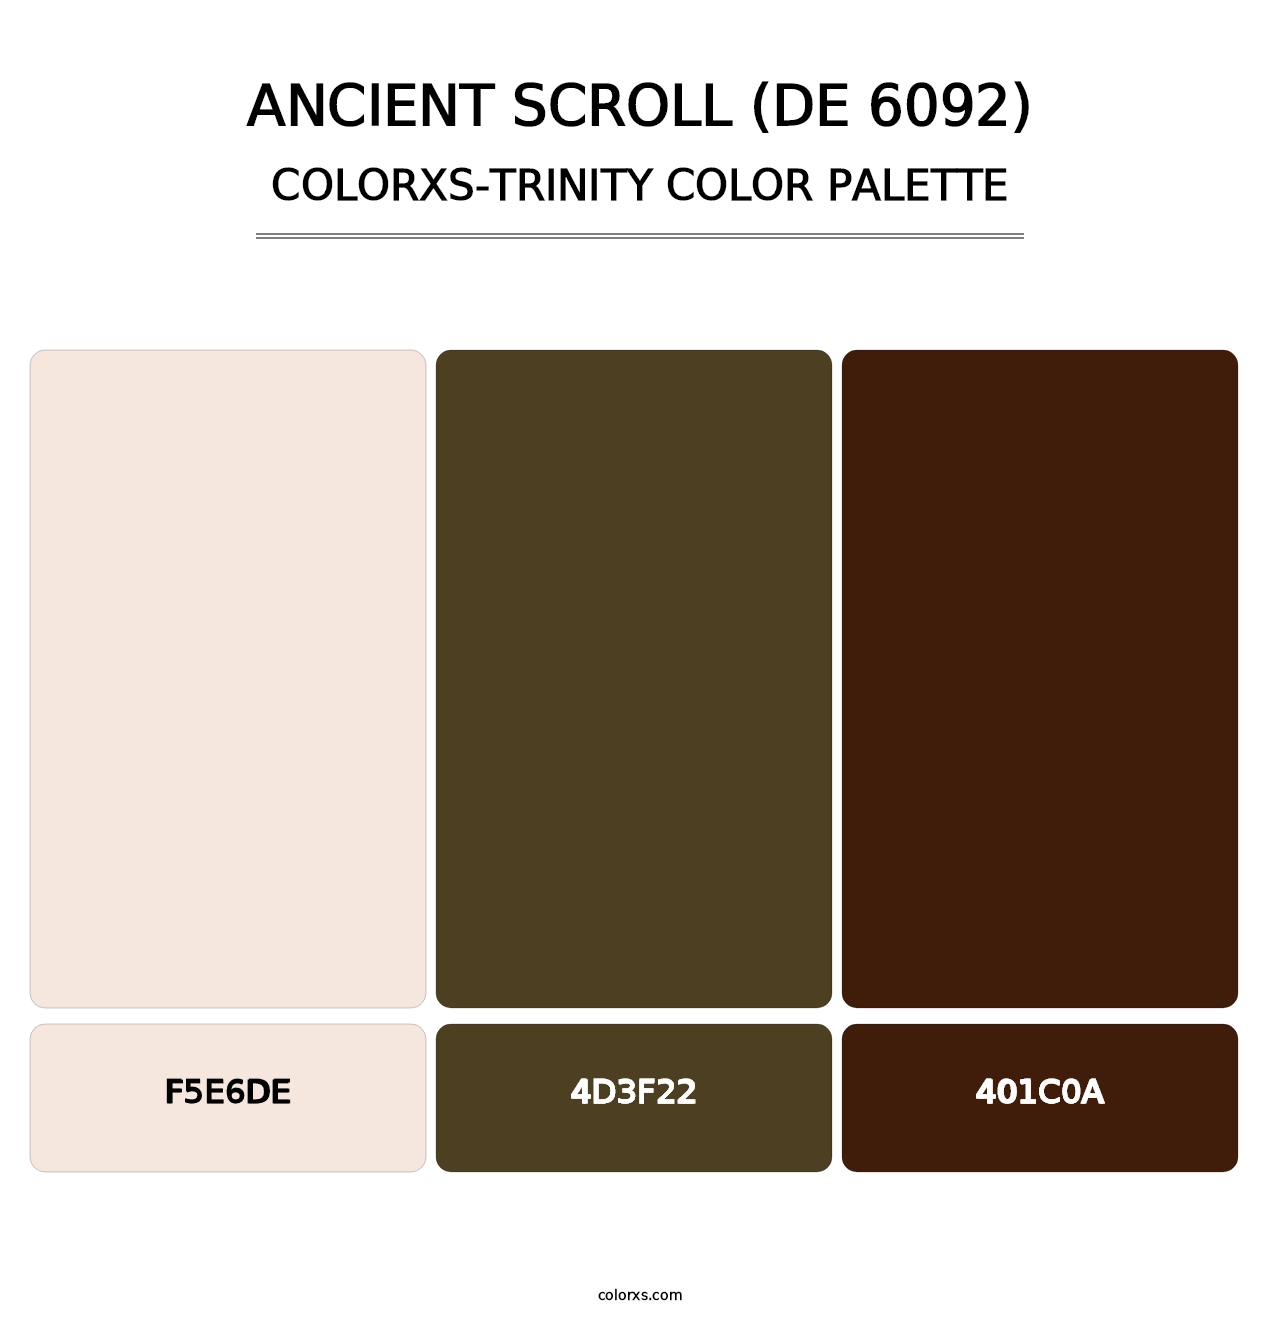 Ancient Scroll (DE 6092) - Colorxs Trinity Palette